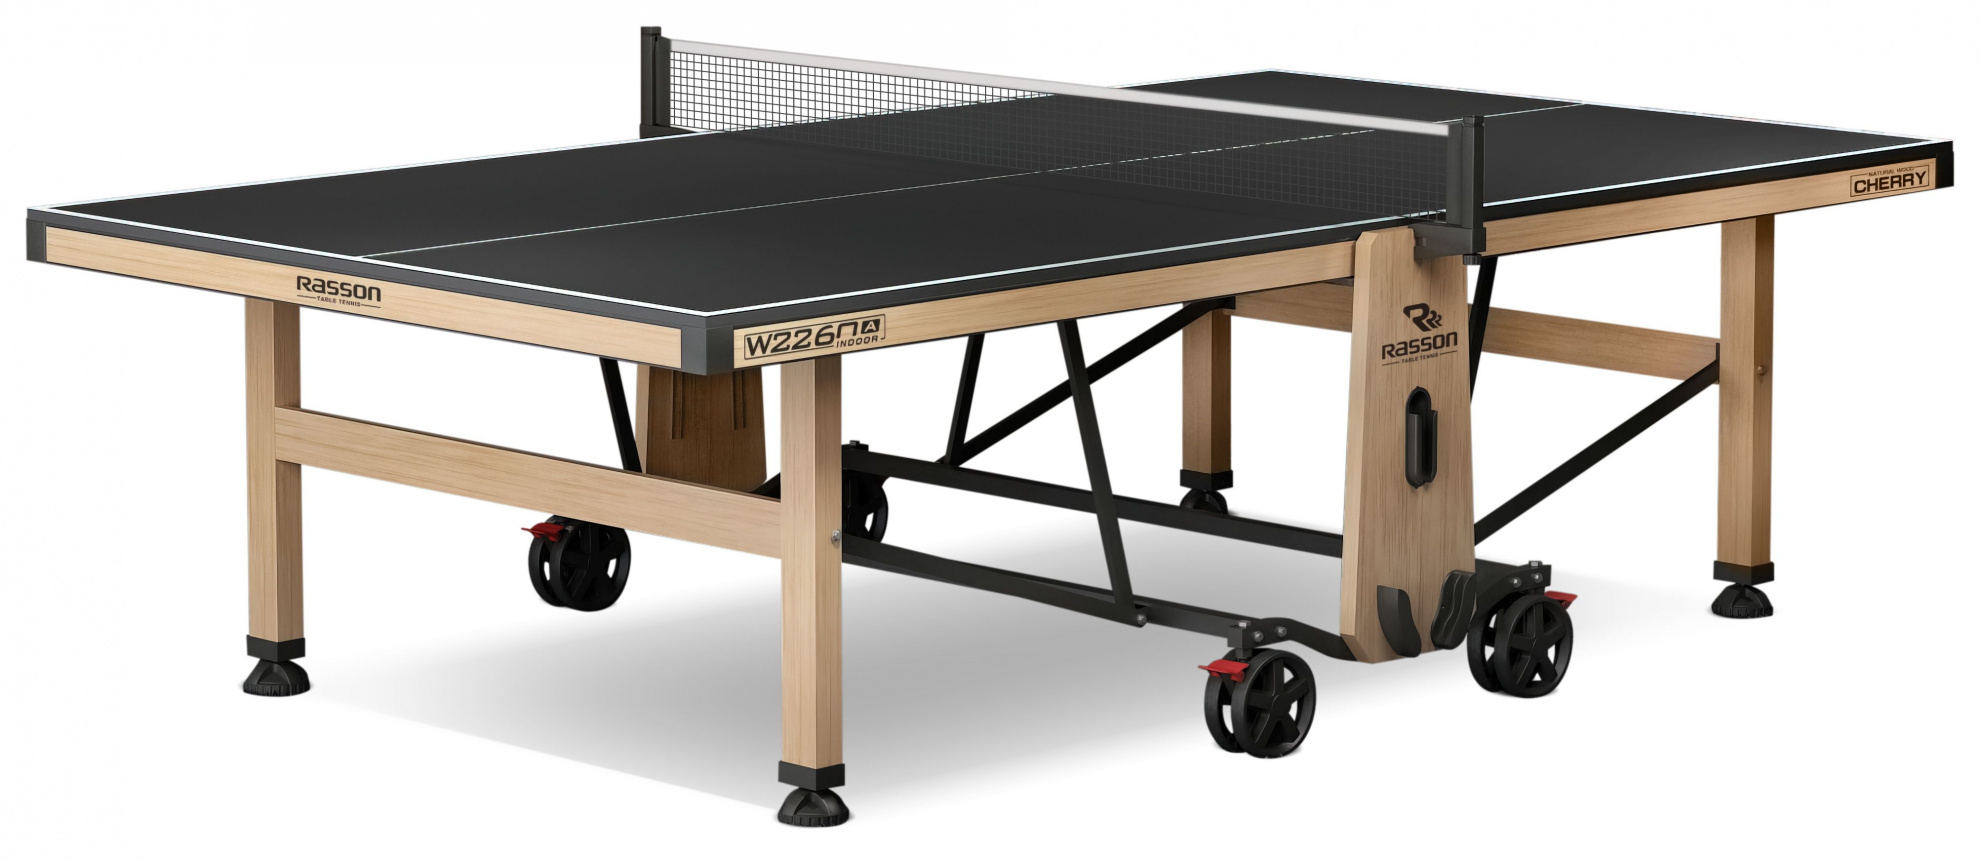 Теннисный стол для помещений Rasson Premium W-2260 Cherry Indoor